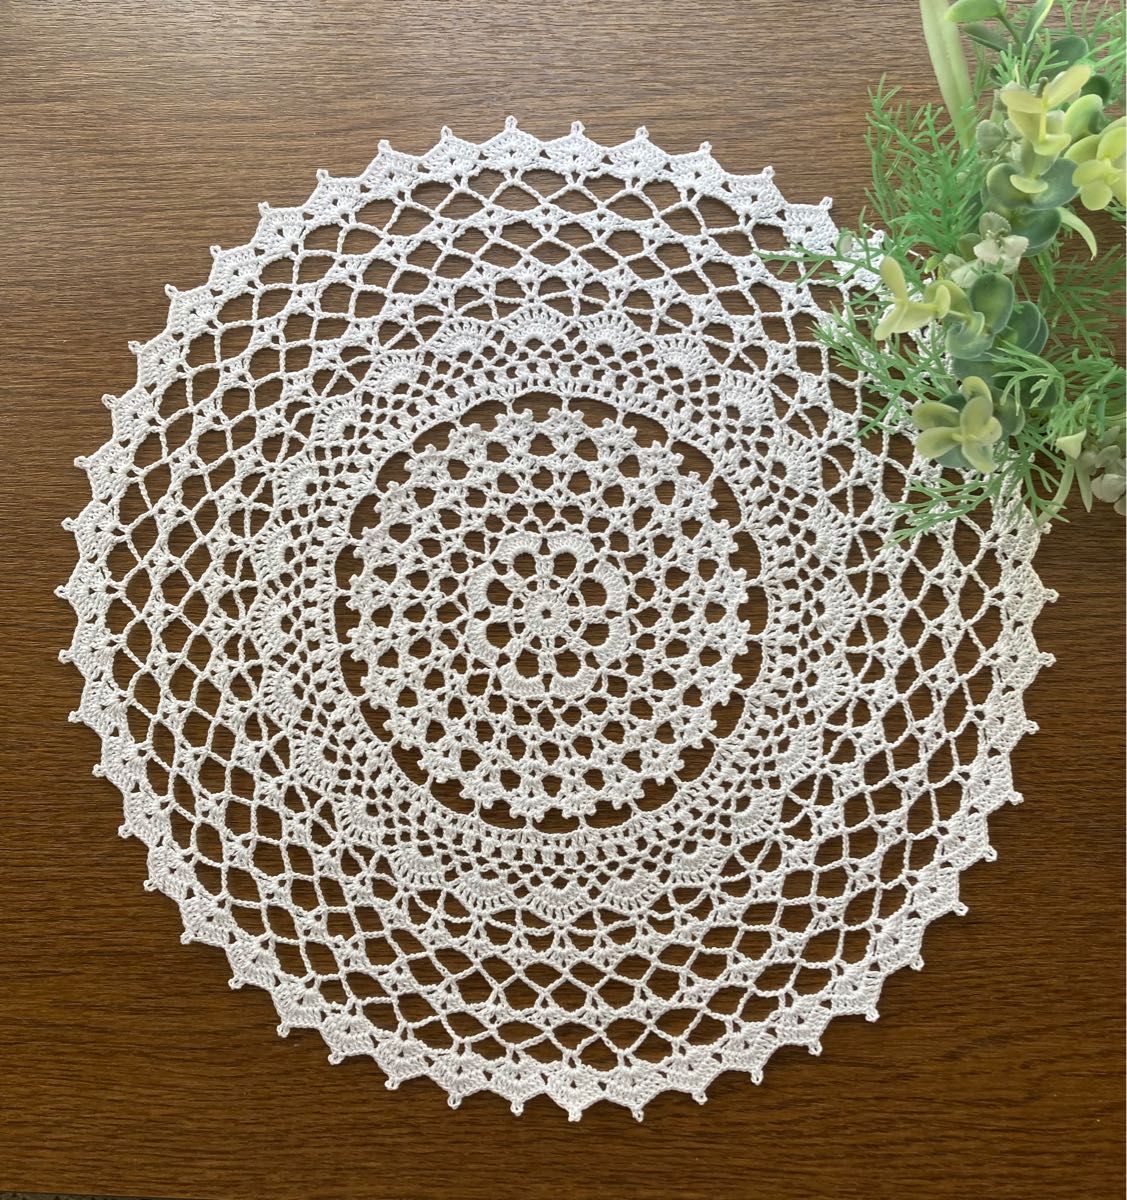 レース編みドイリーwelcomeホワイトハンドメイド - テーブル用品